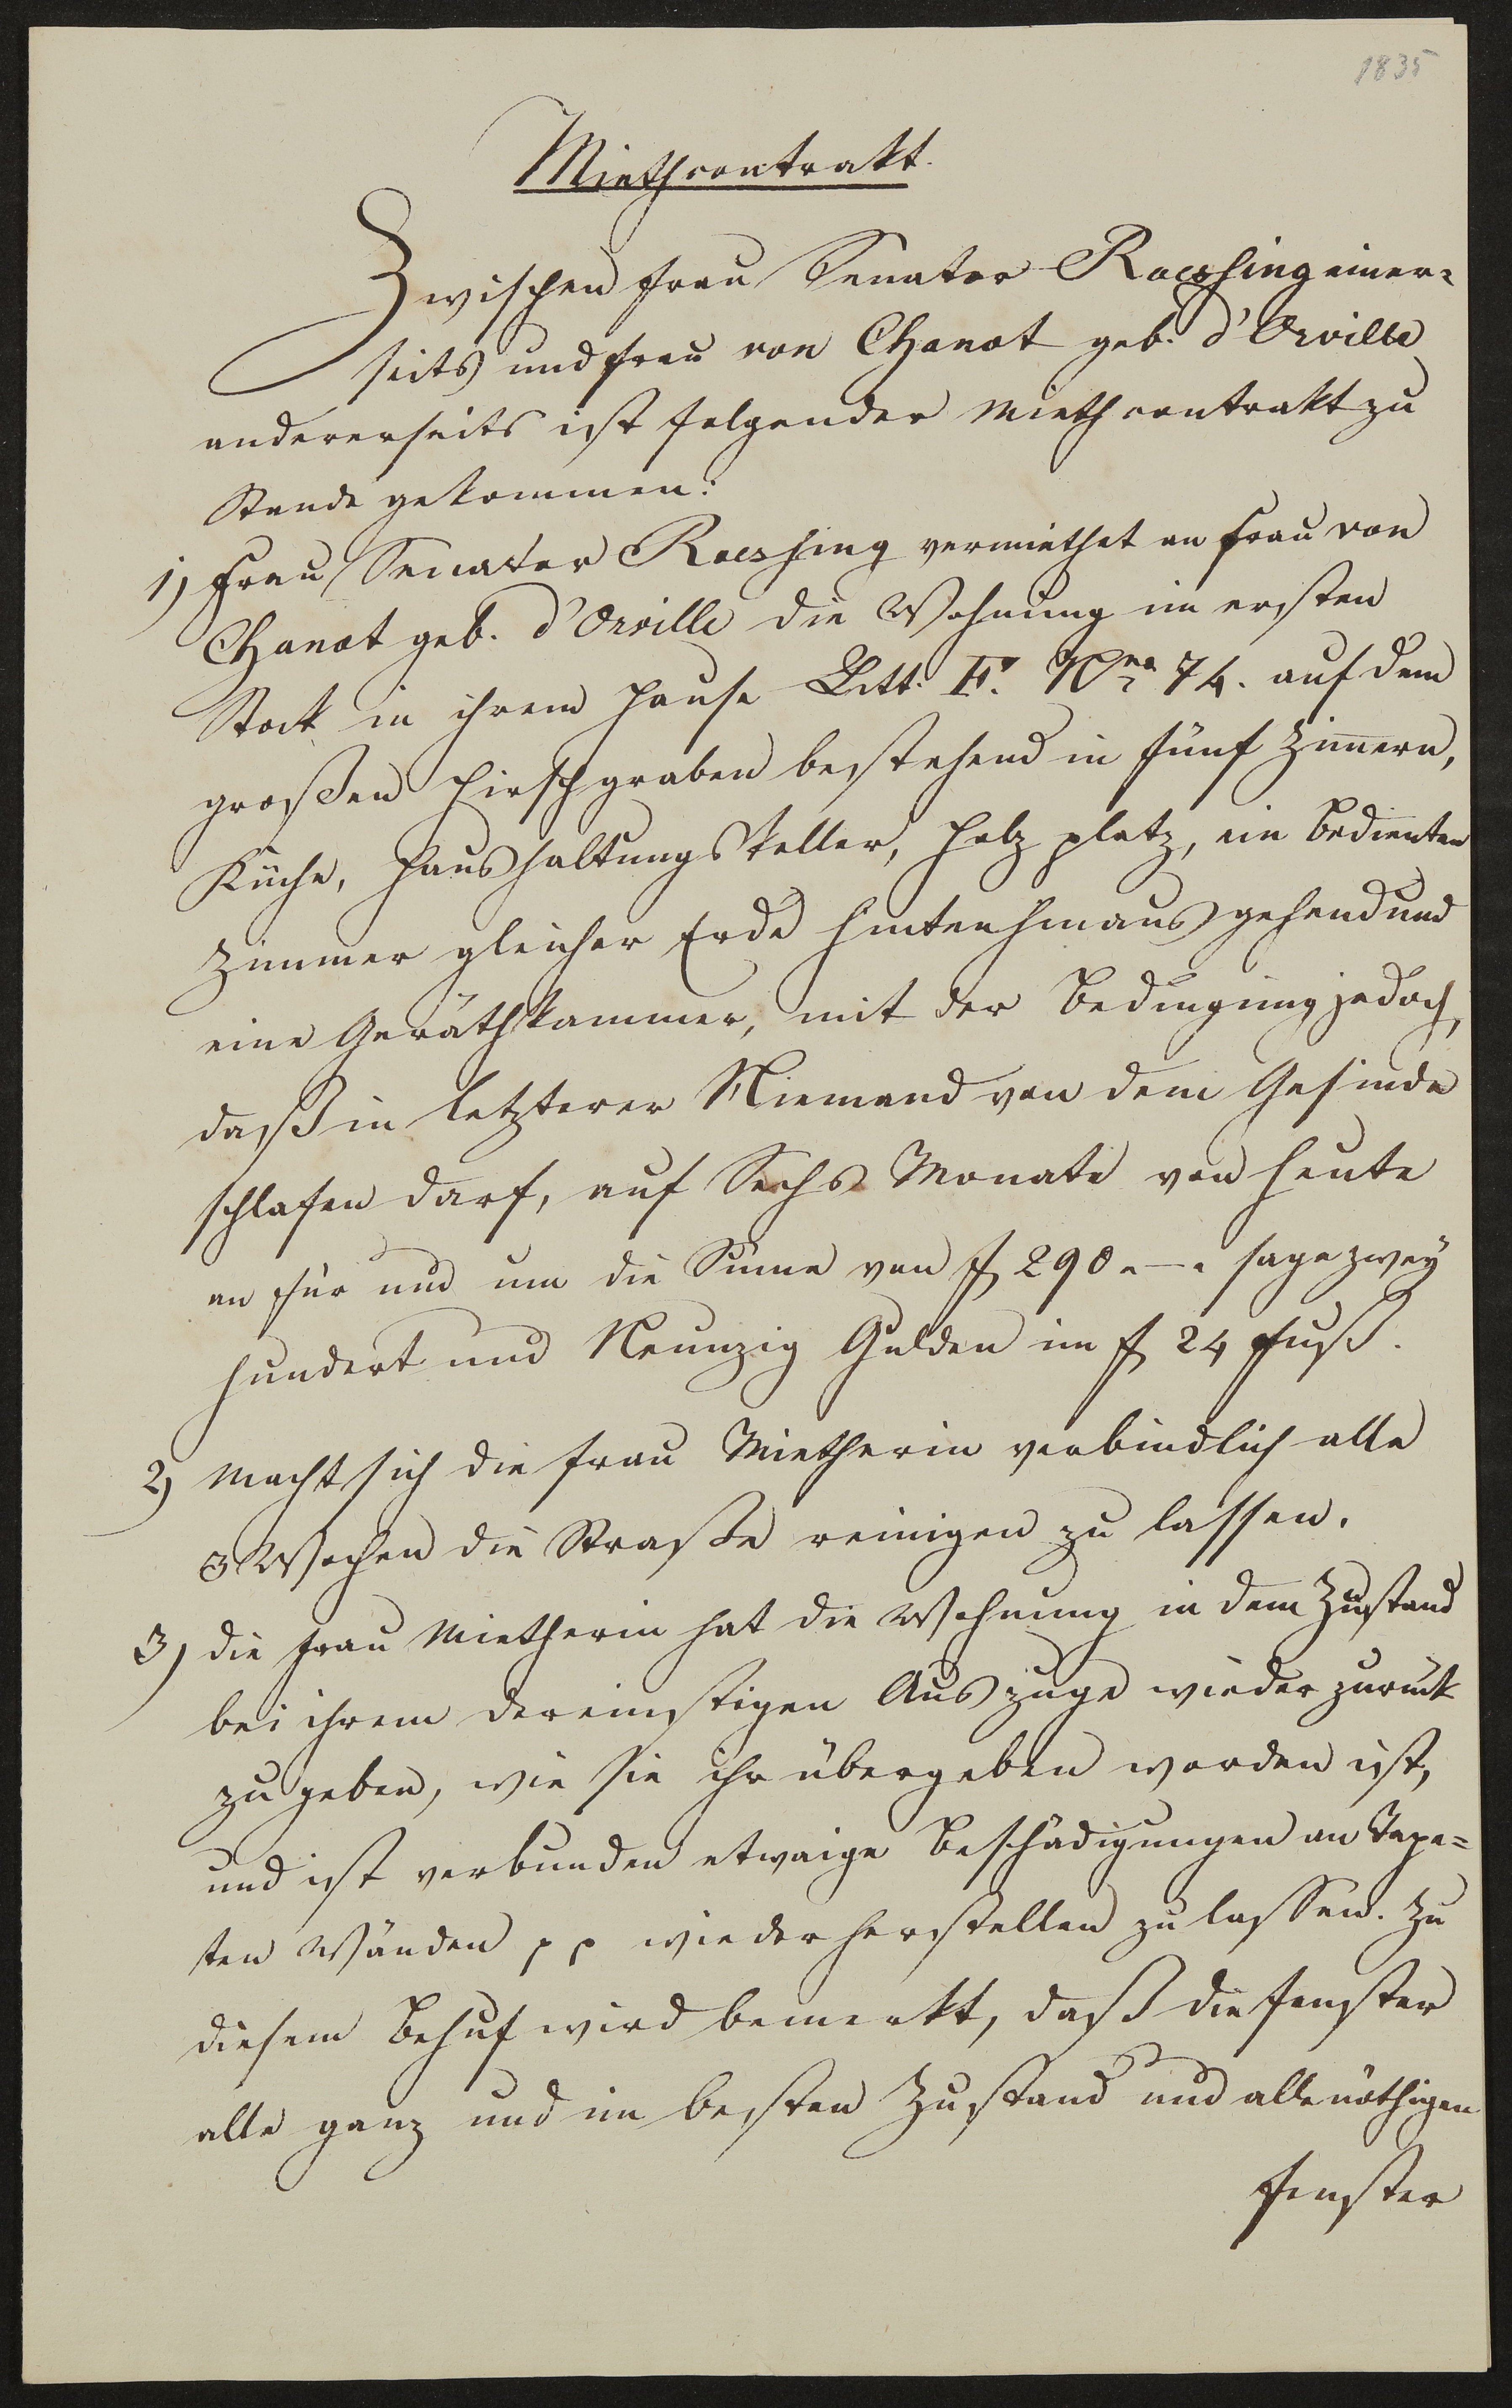 Mietvertrag zwischen Jeannette Rössing und Frau von Chanot, geborene d'Orville vom 13.10.1835 (Freies Deutsches Hochstift / Frankfurter Goethe-Museum Public Domain Mark)